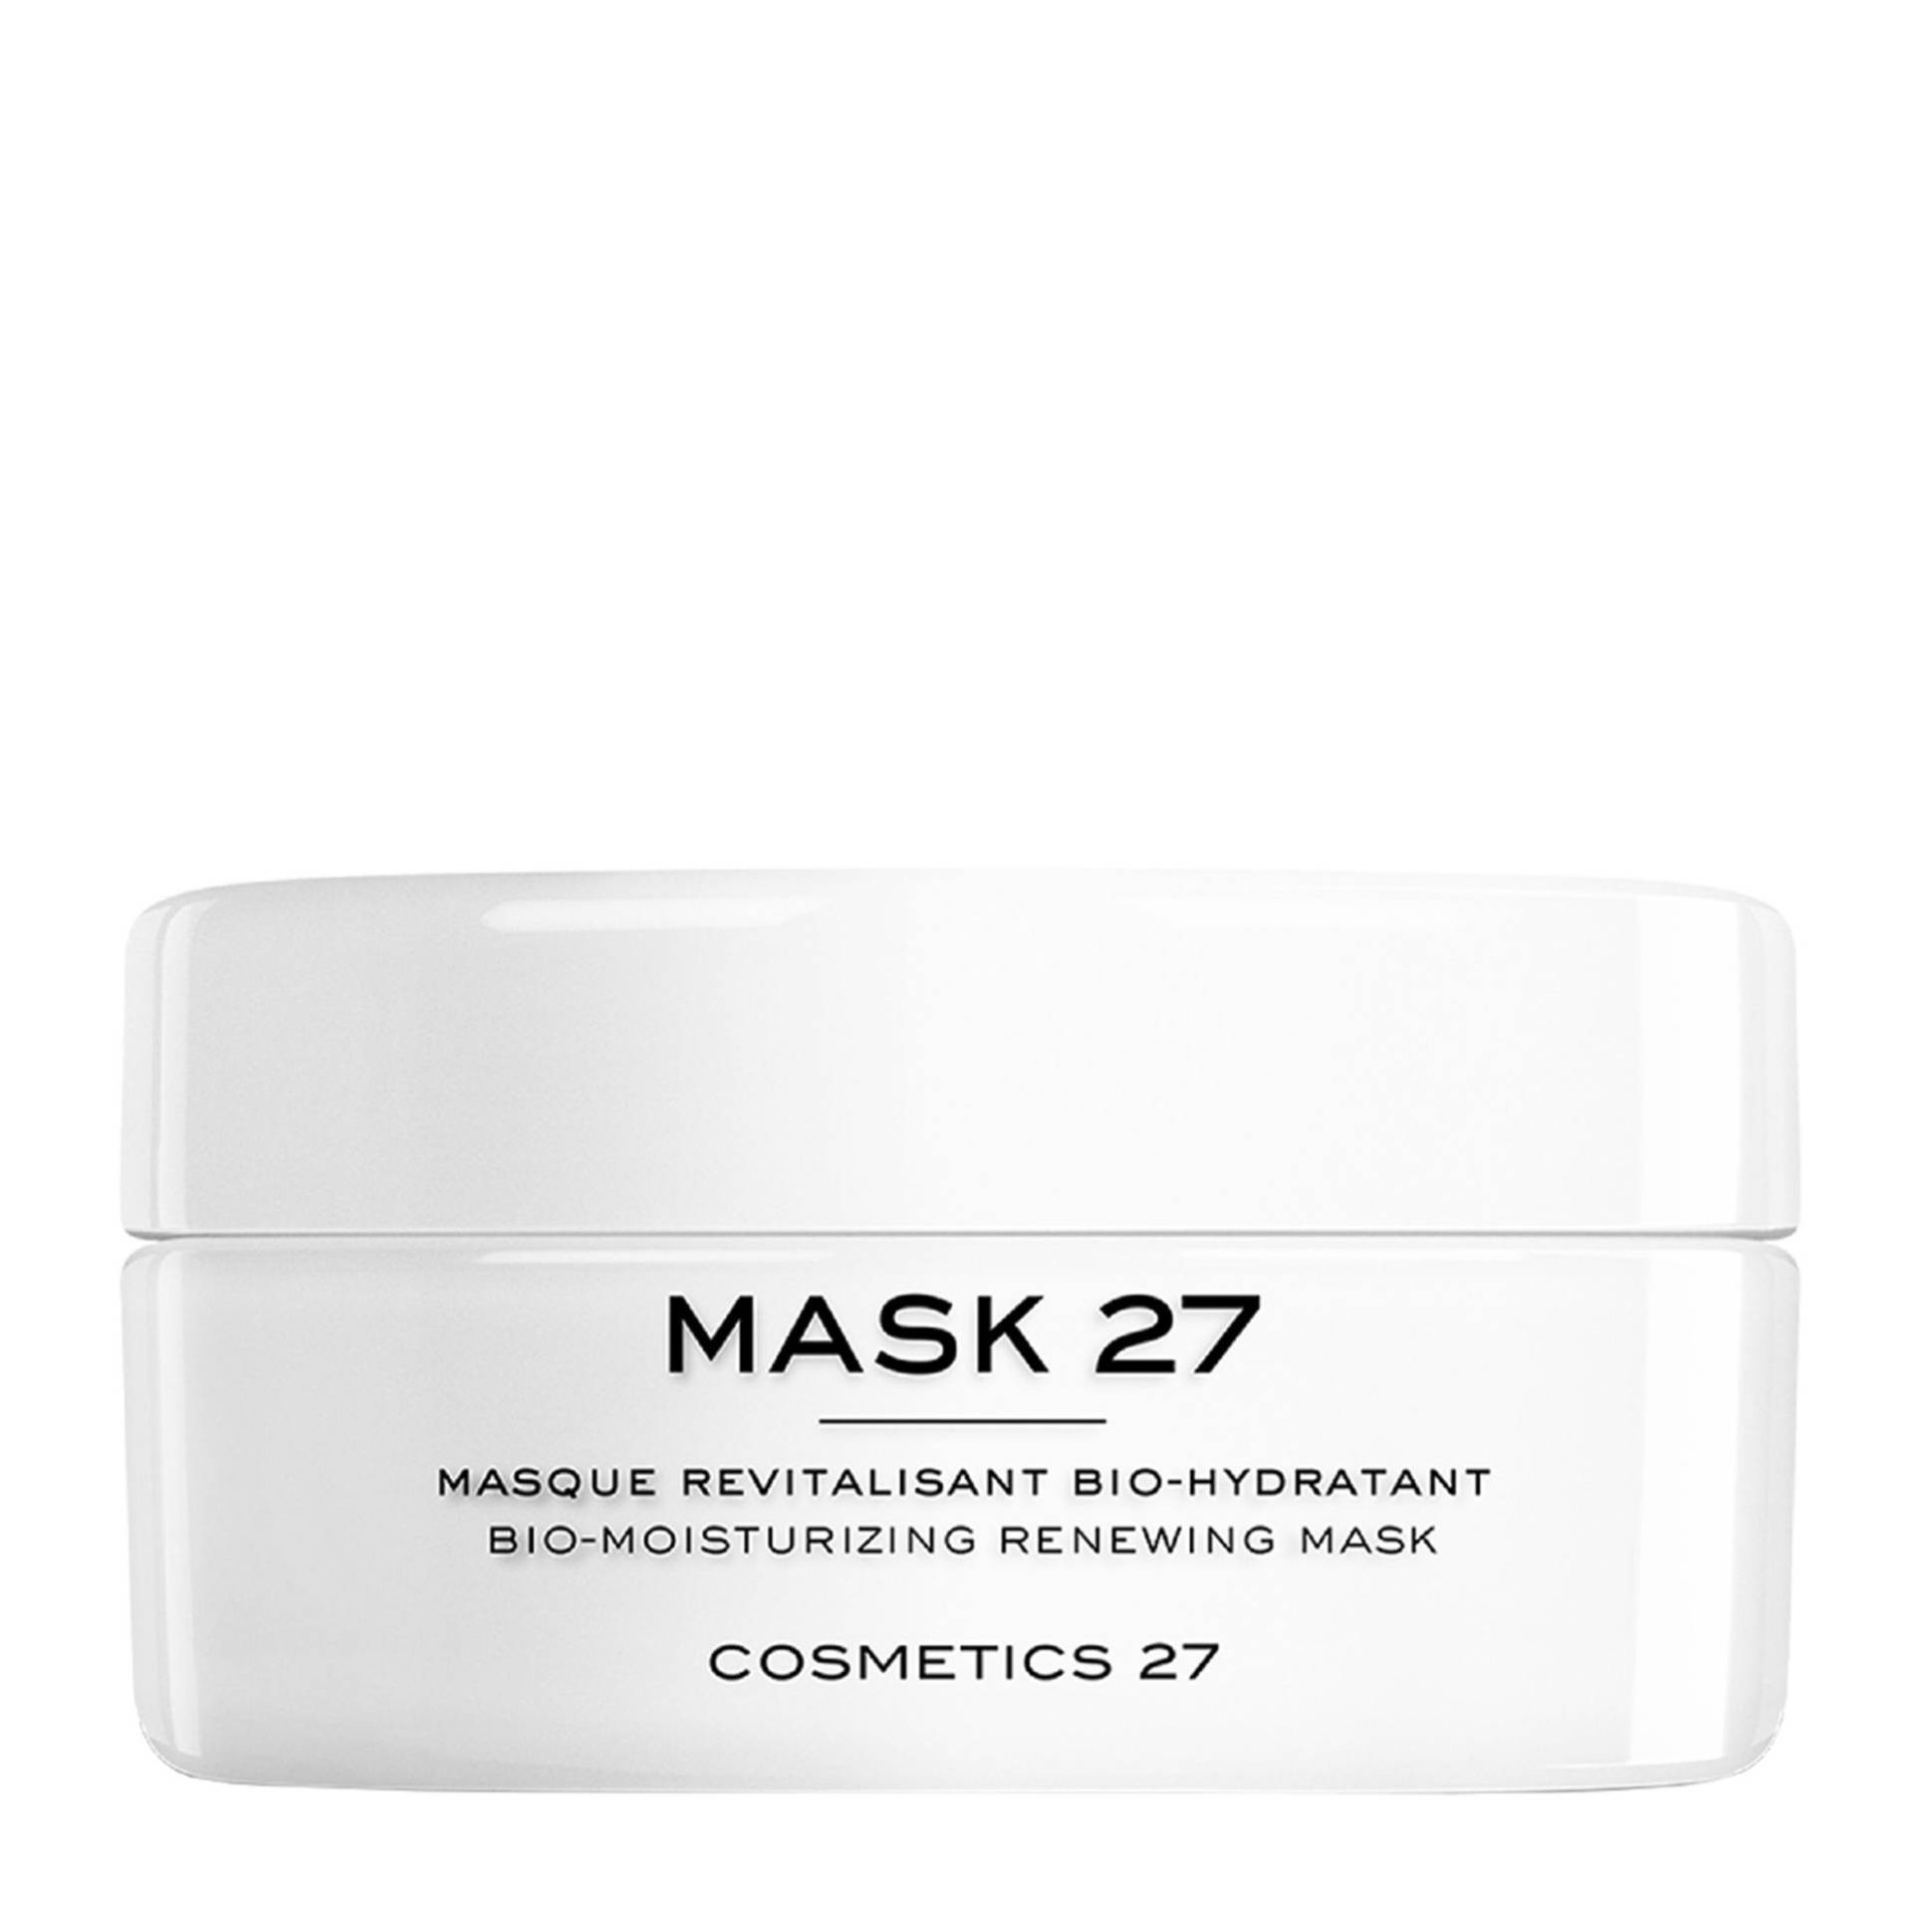 Увлажняющая восстанавливающая биомаска Cosmetics 27 PRO Mask 27